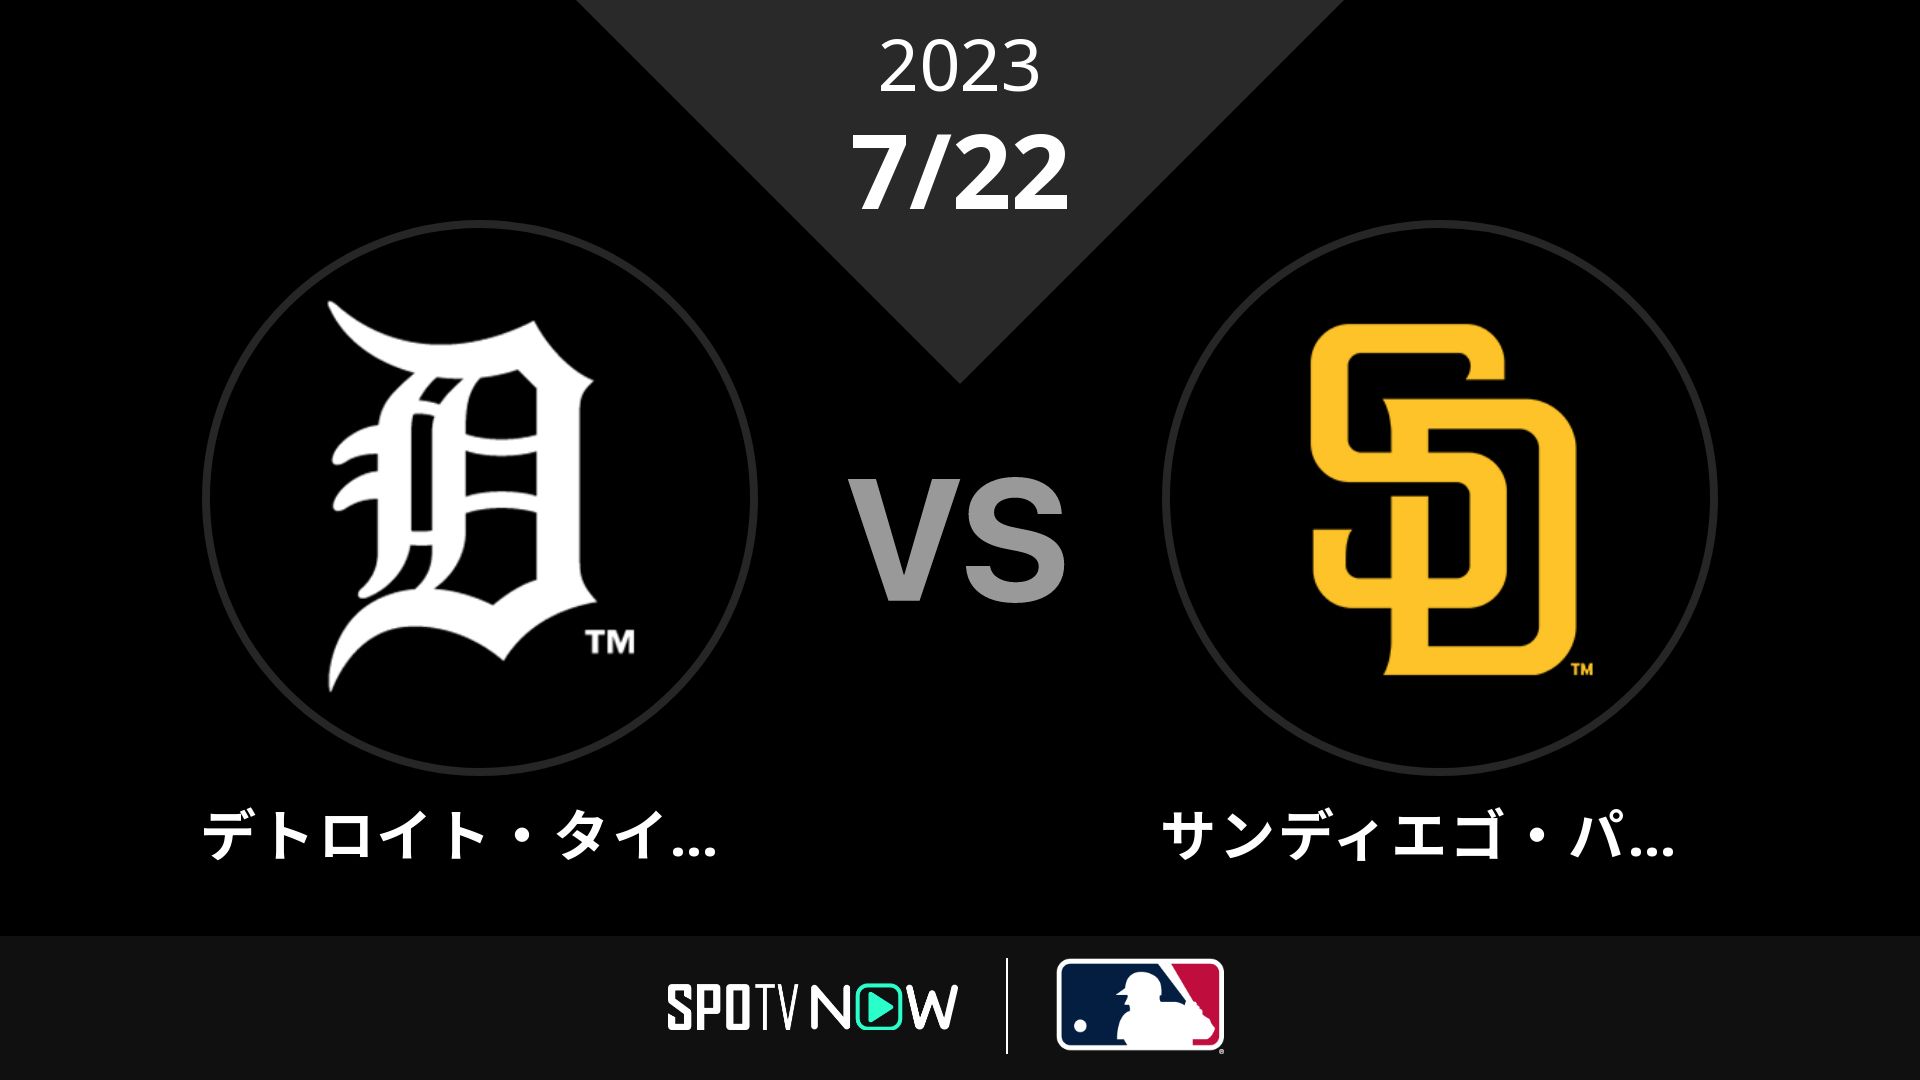 2023/7/22 タイガース vs パドレス [MLB]